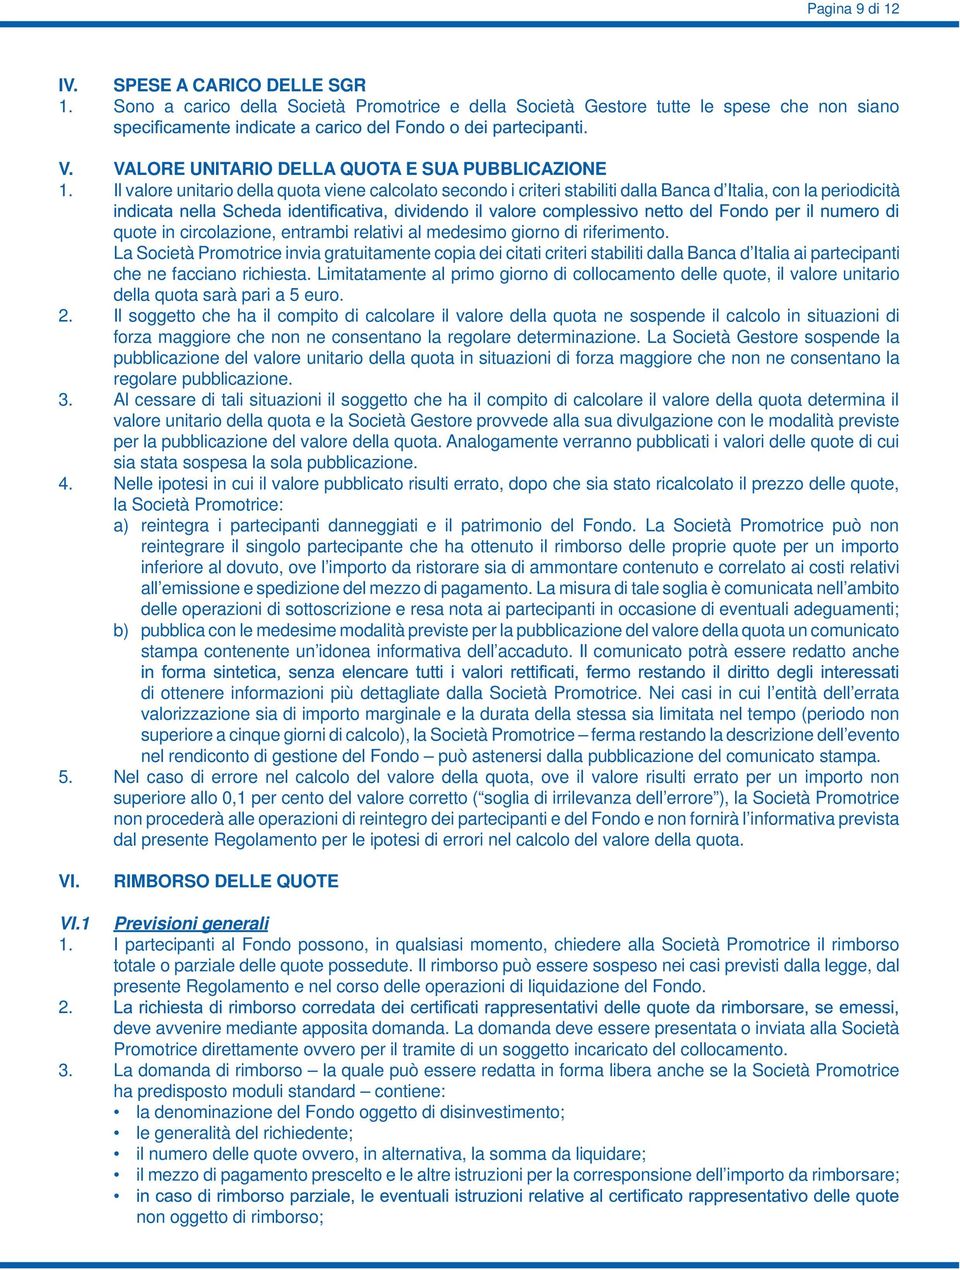 La Società Promotrice invia gratuitamente copia dei citati criteri stabiliti dalla Banca d Italia ai partecipanti che ne facciano richiesta.